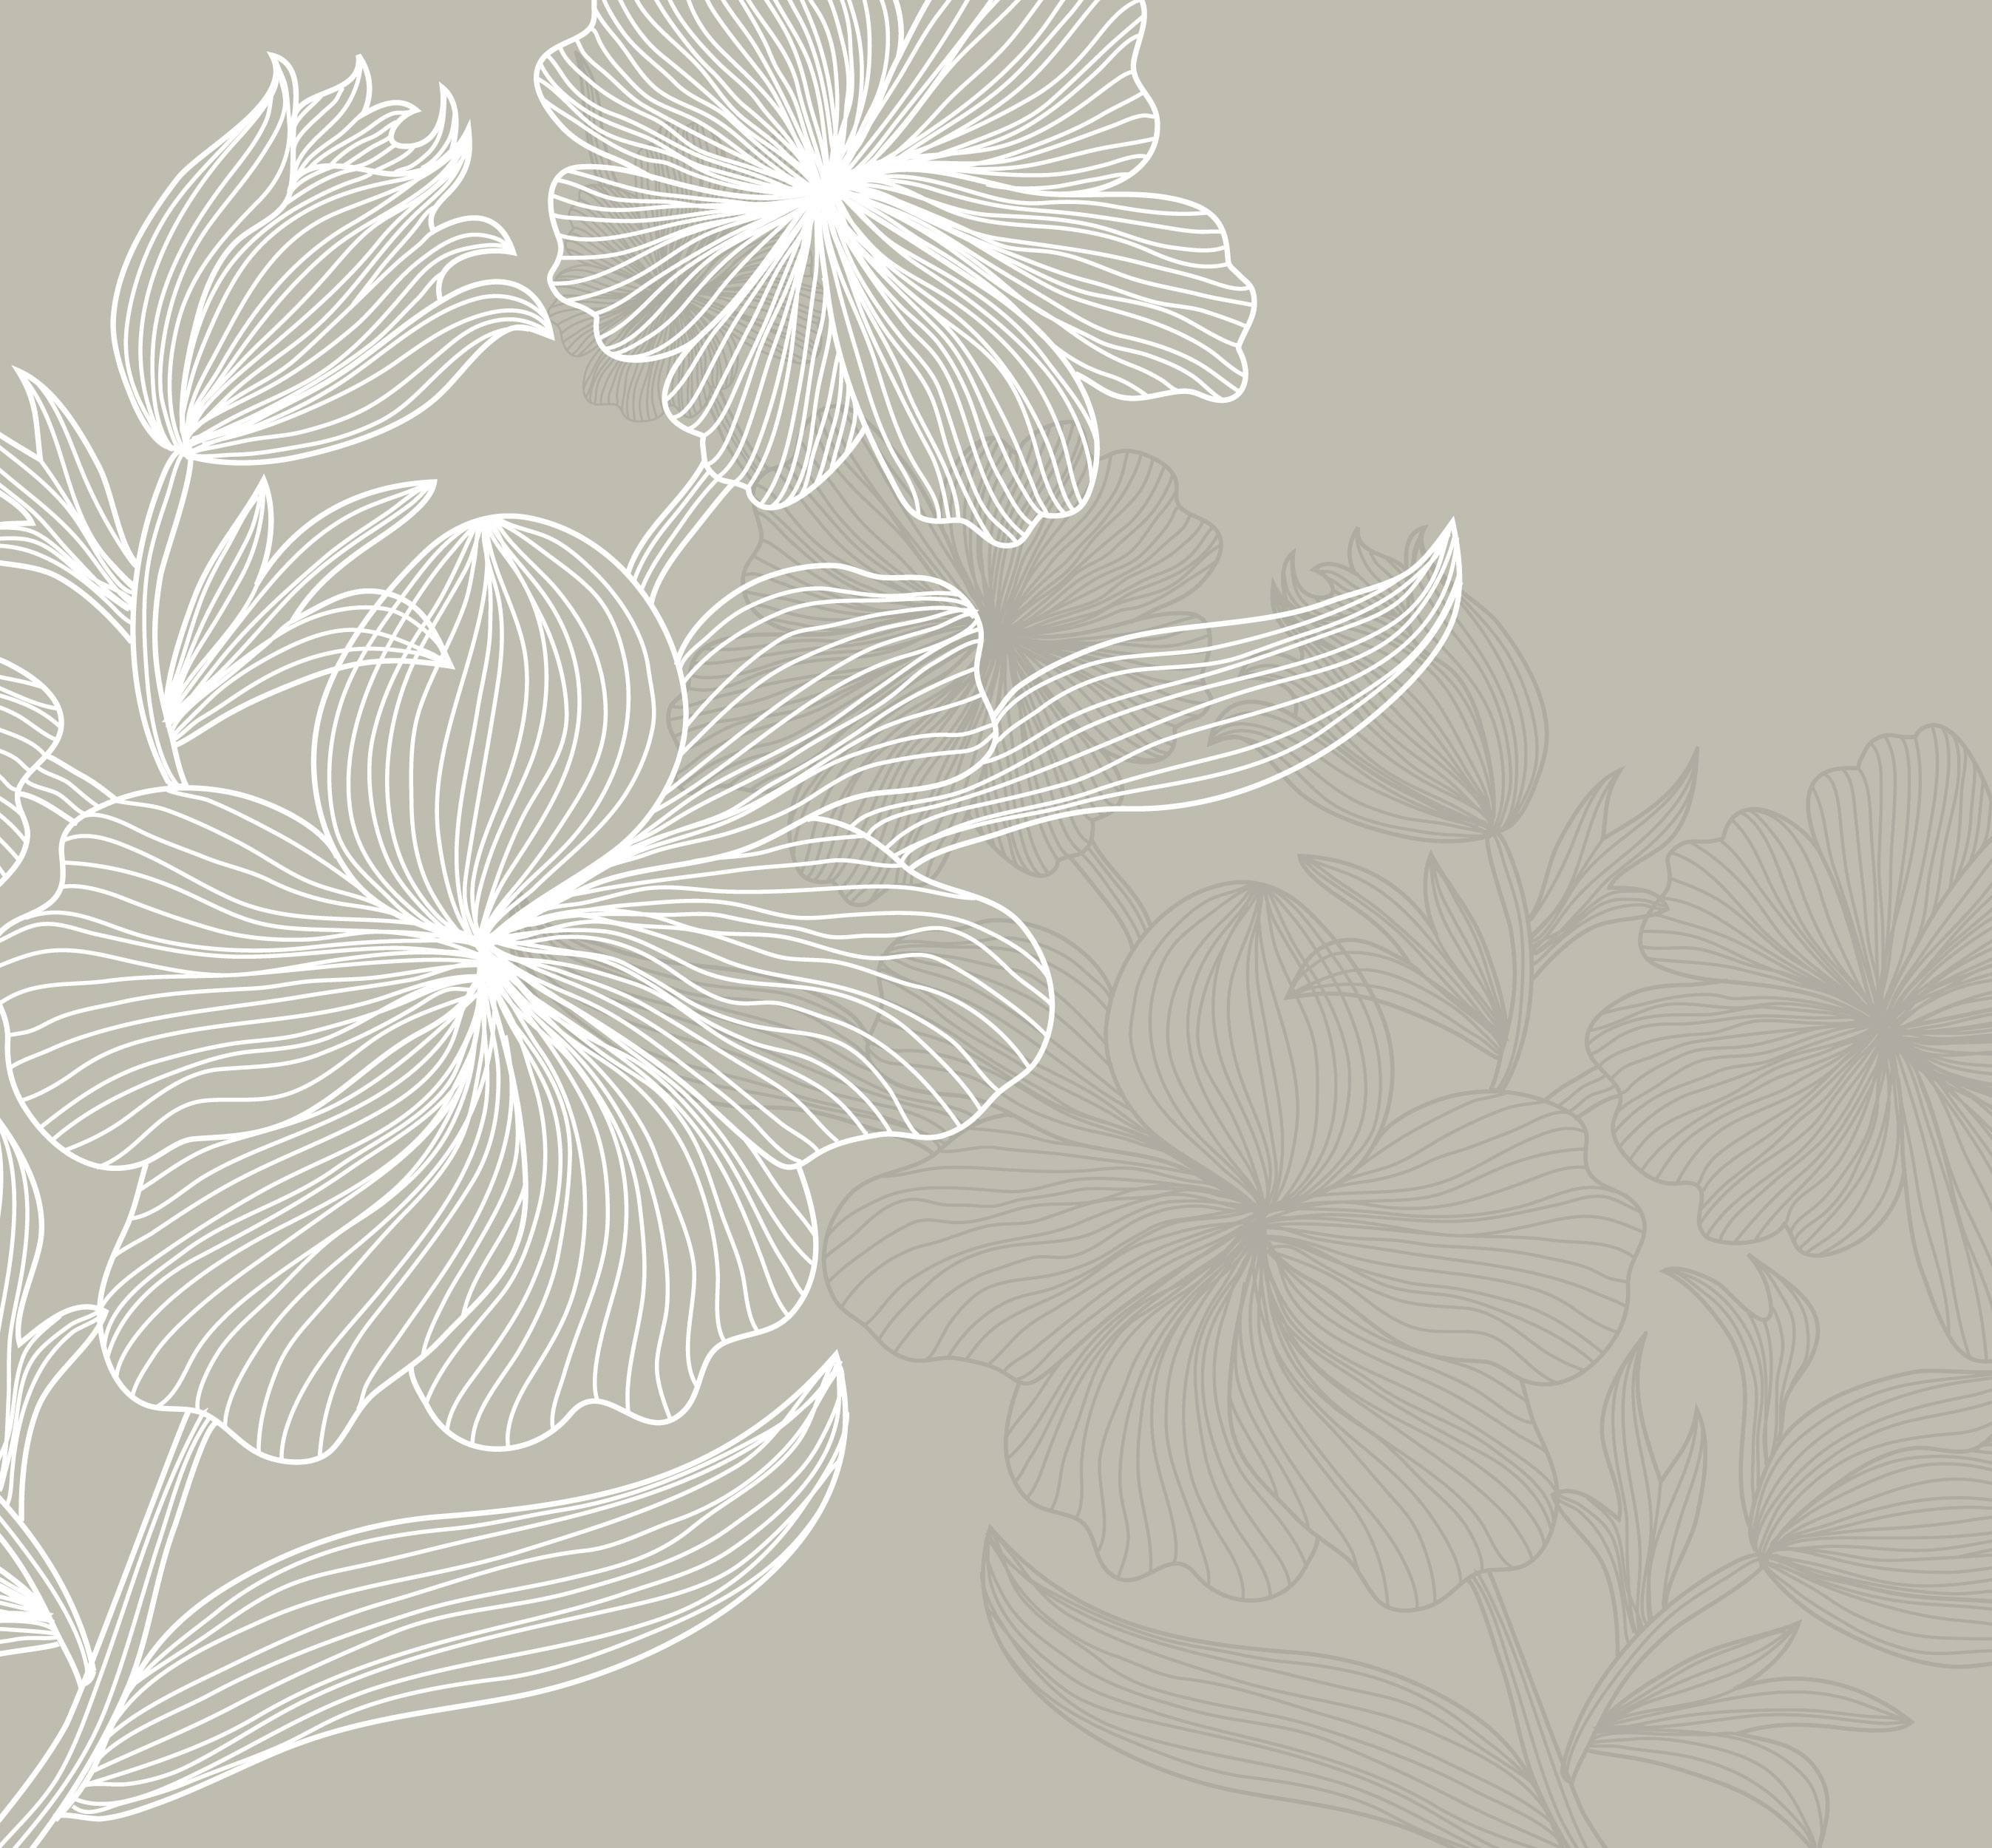 花のイラスト フリー素材 壁紙 背景no 668 灰 白抜き シルエット